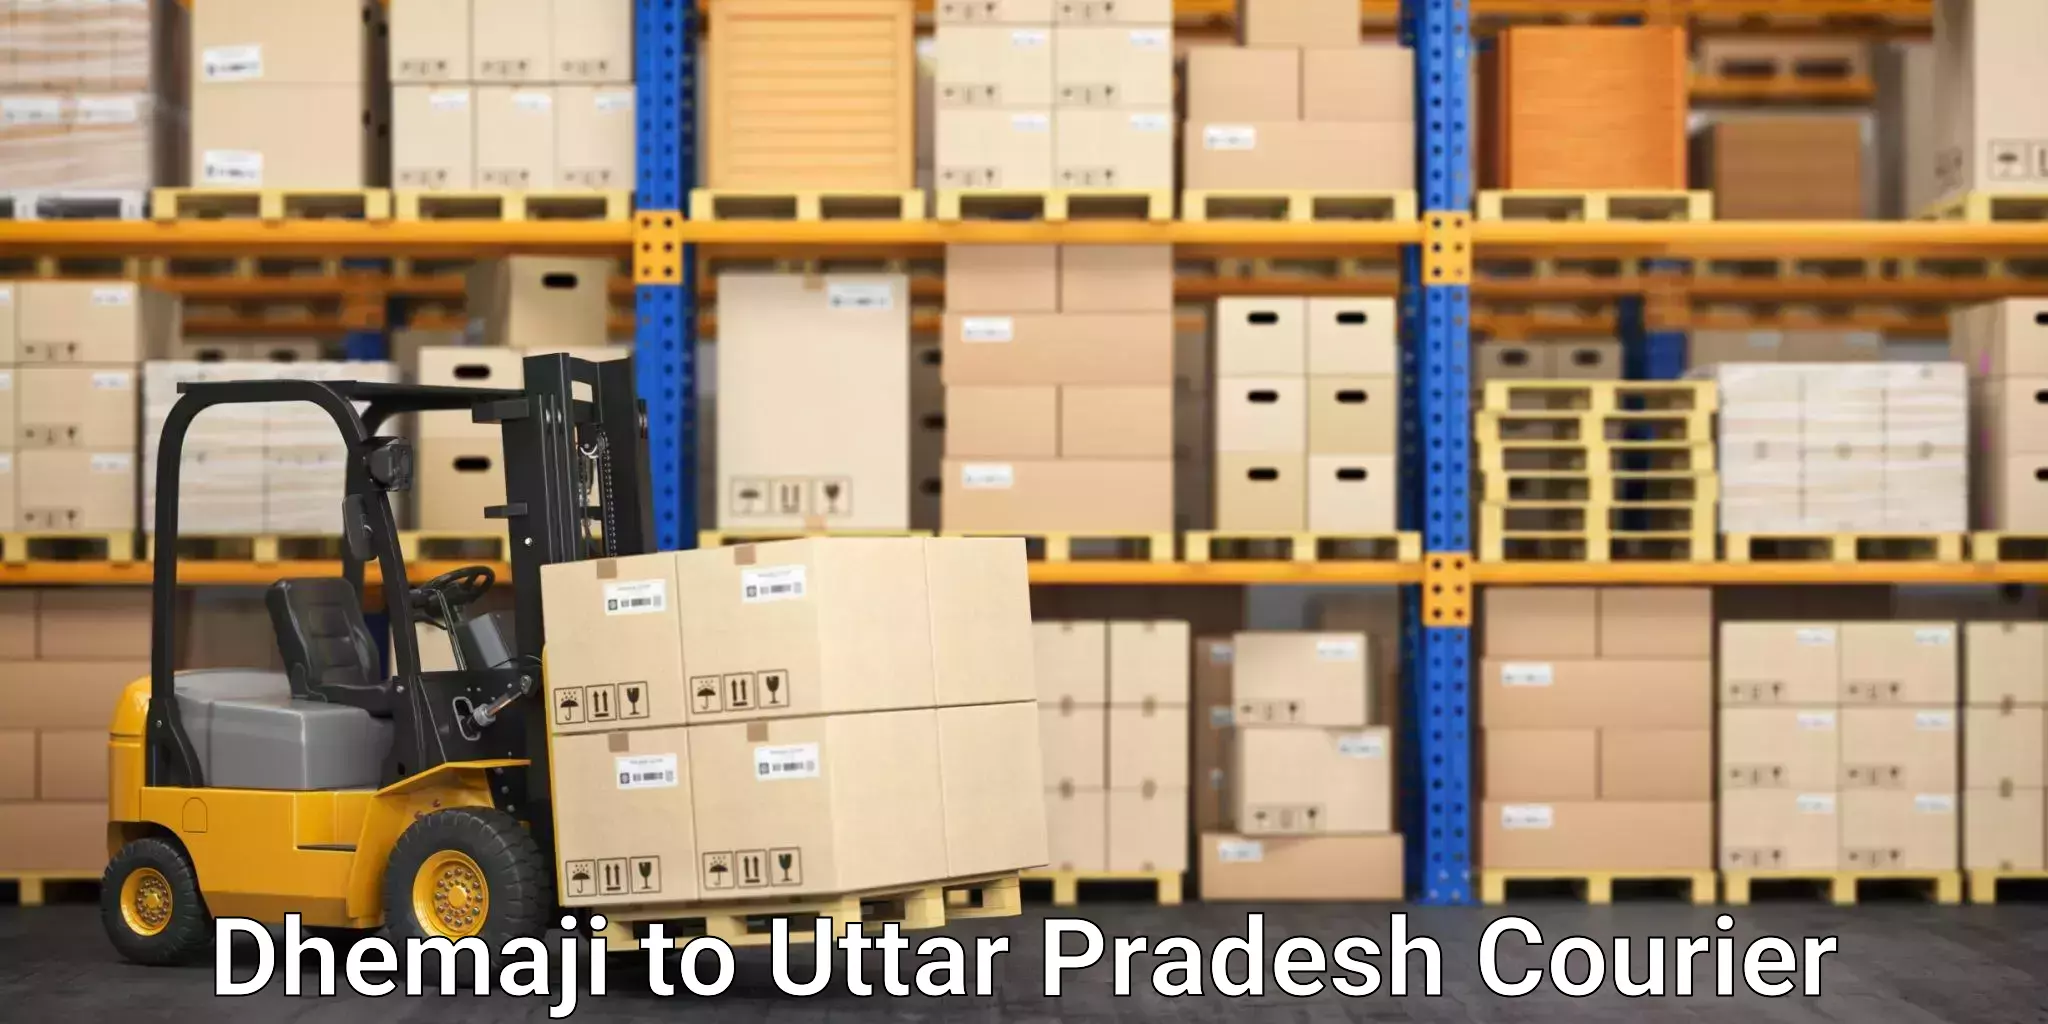 Efficient parcel tracking Dhemaji to Ganj Dundwara